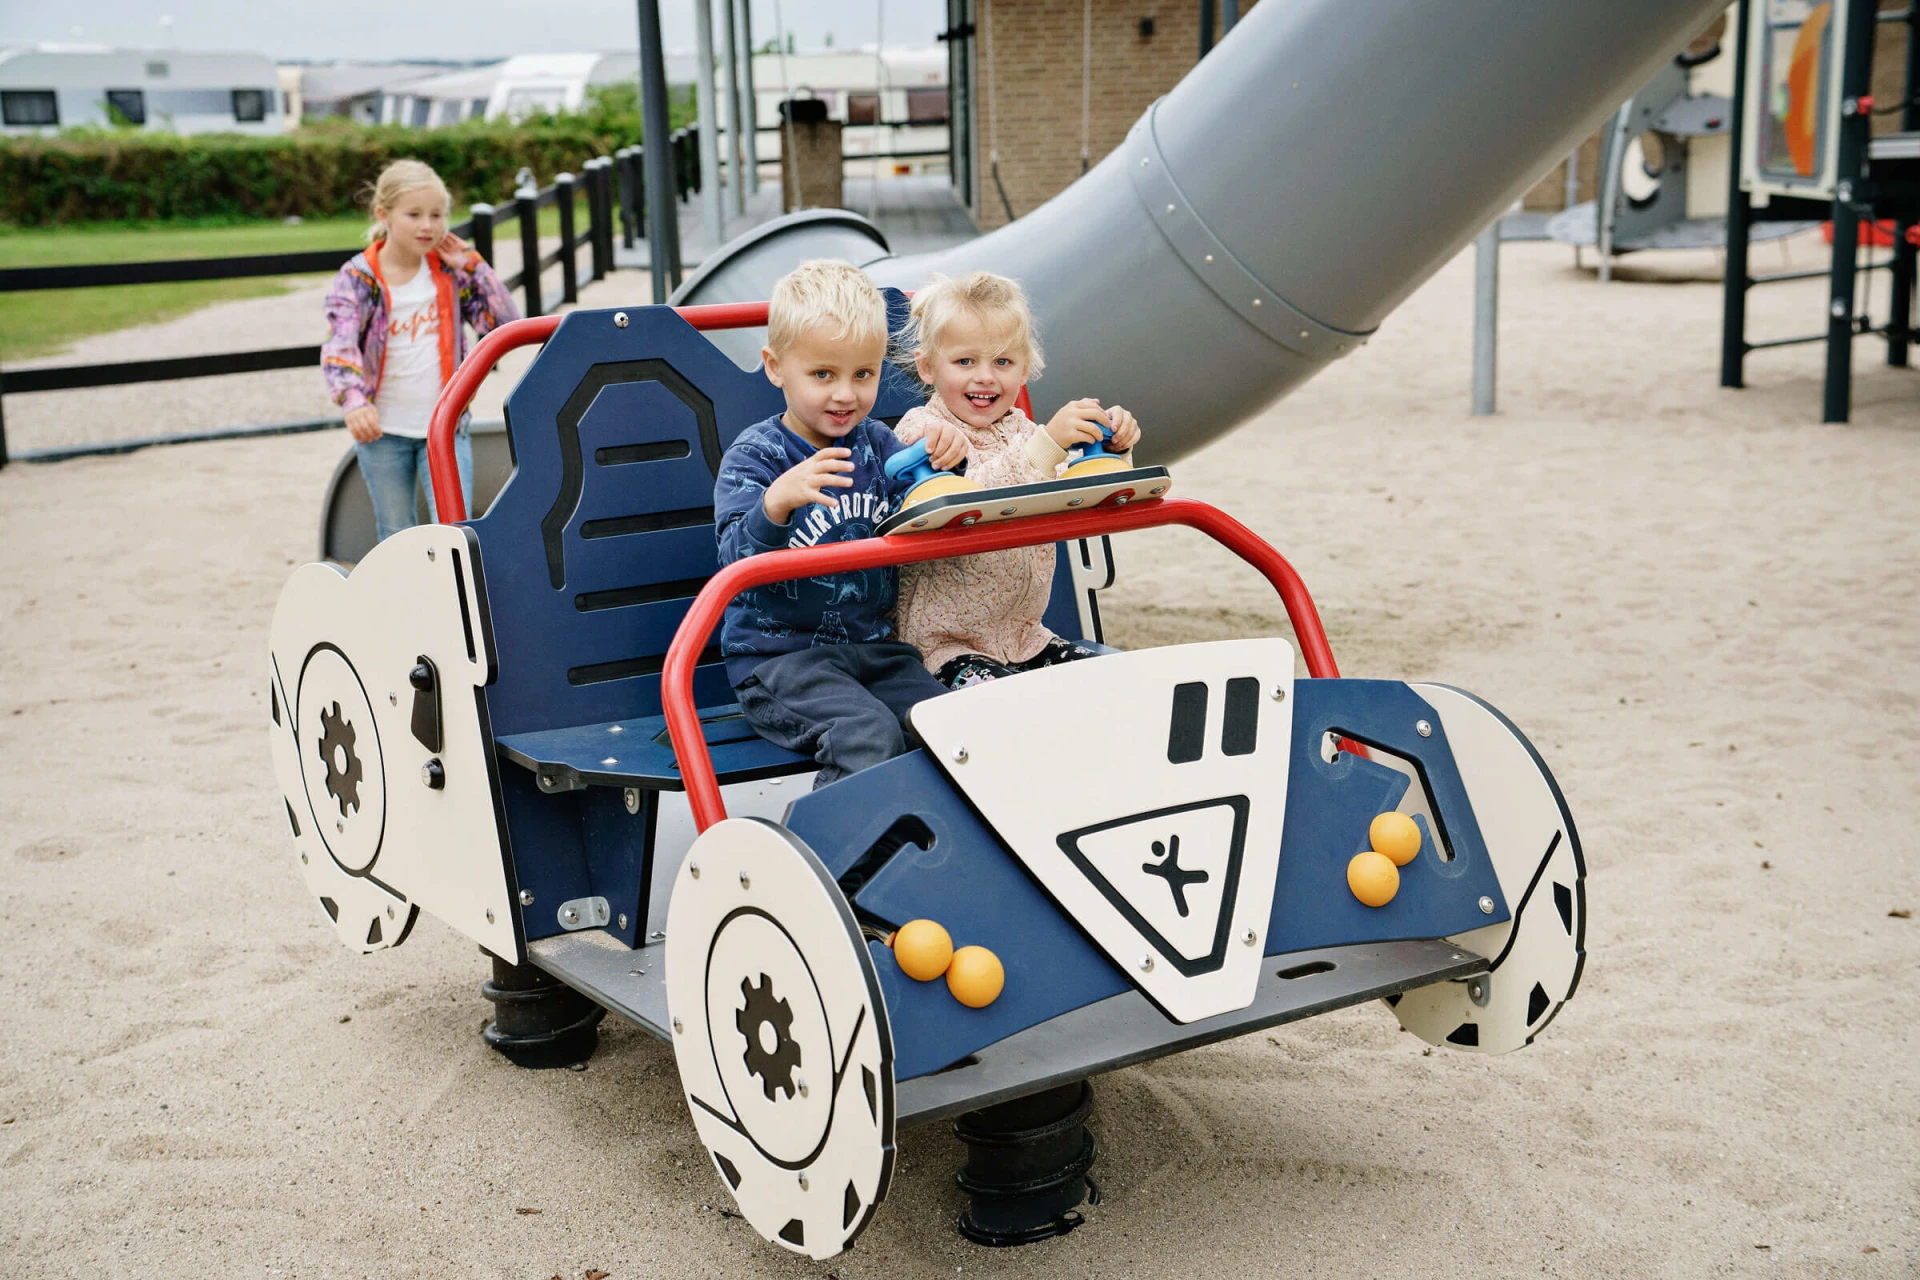 børn leger i en bil med legepladsudstyr som tema